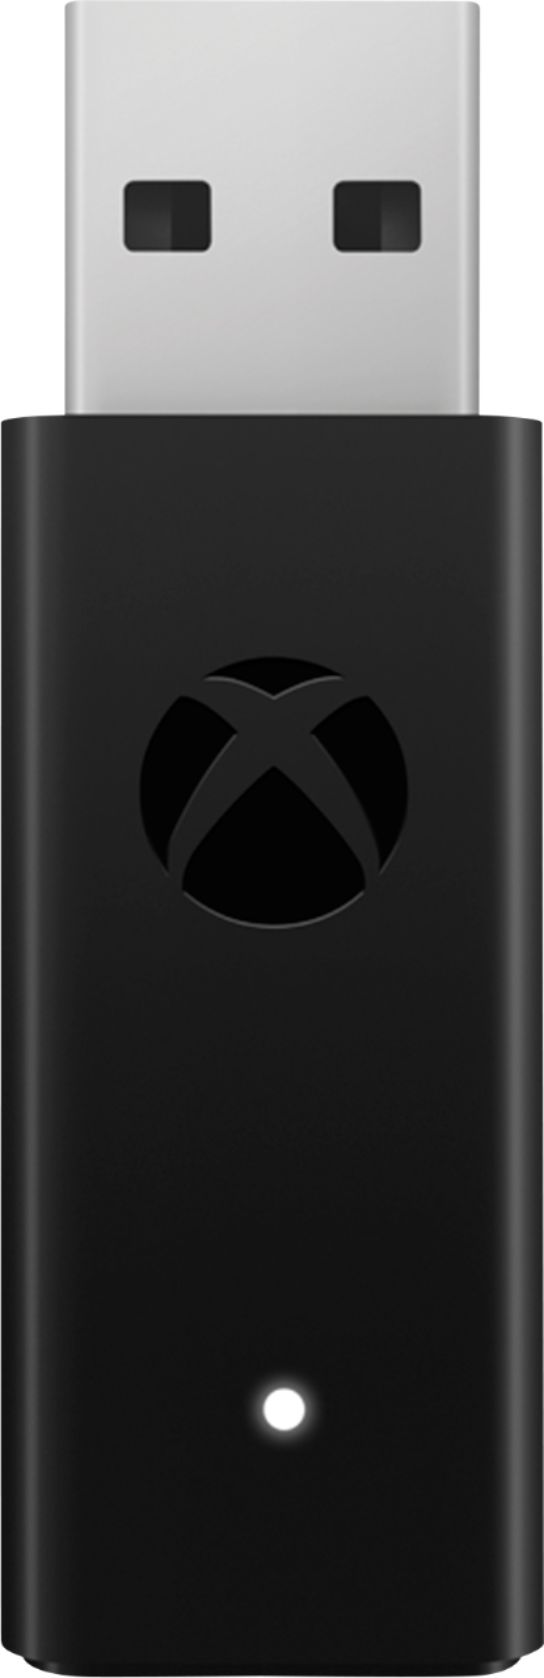 evaporación espejo Determinar con precisión Microsoft Xbox Wireless Adapter for Windows 10 Black 6HN-00002 - Best Buy